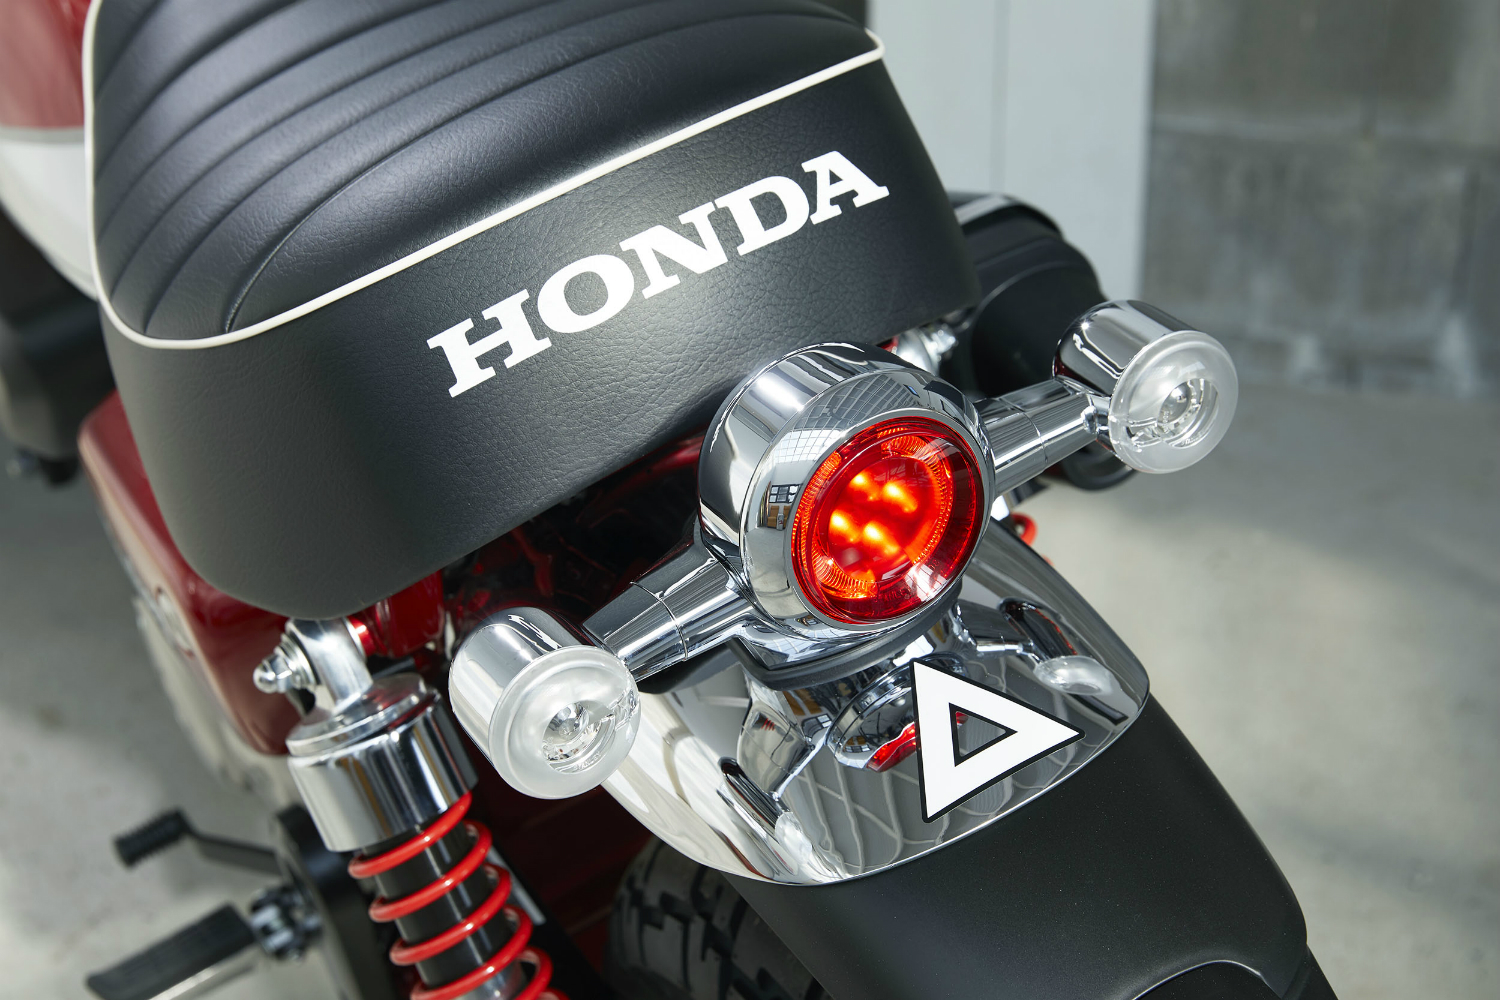 2019 Honda Monkey